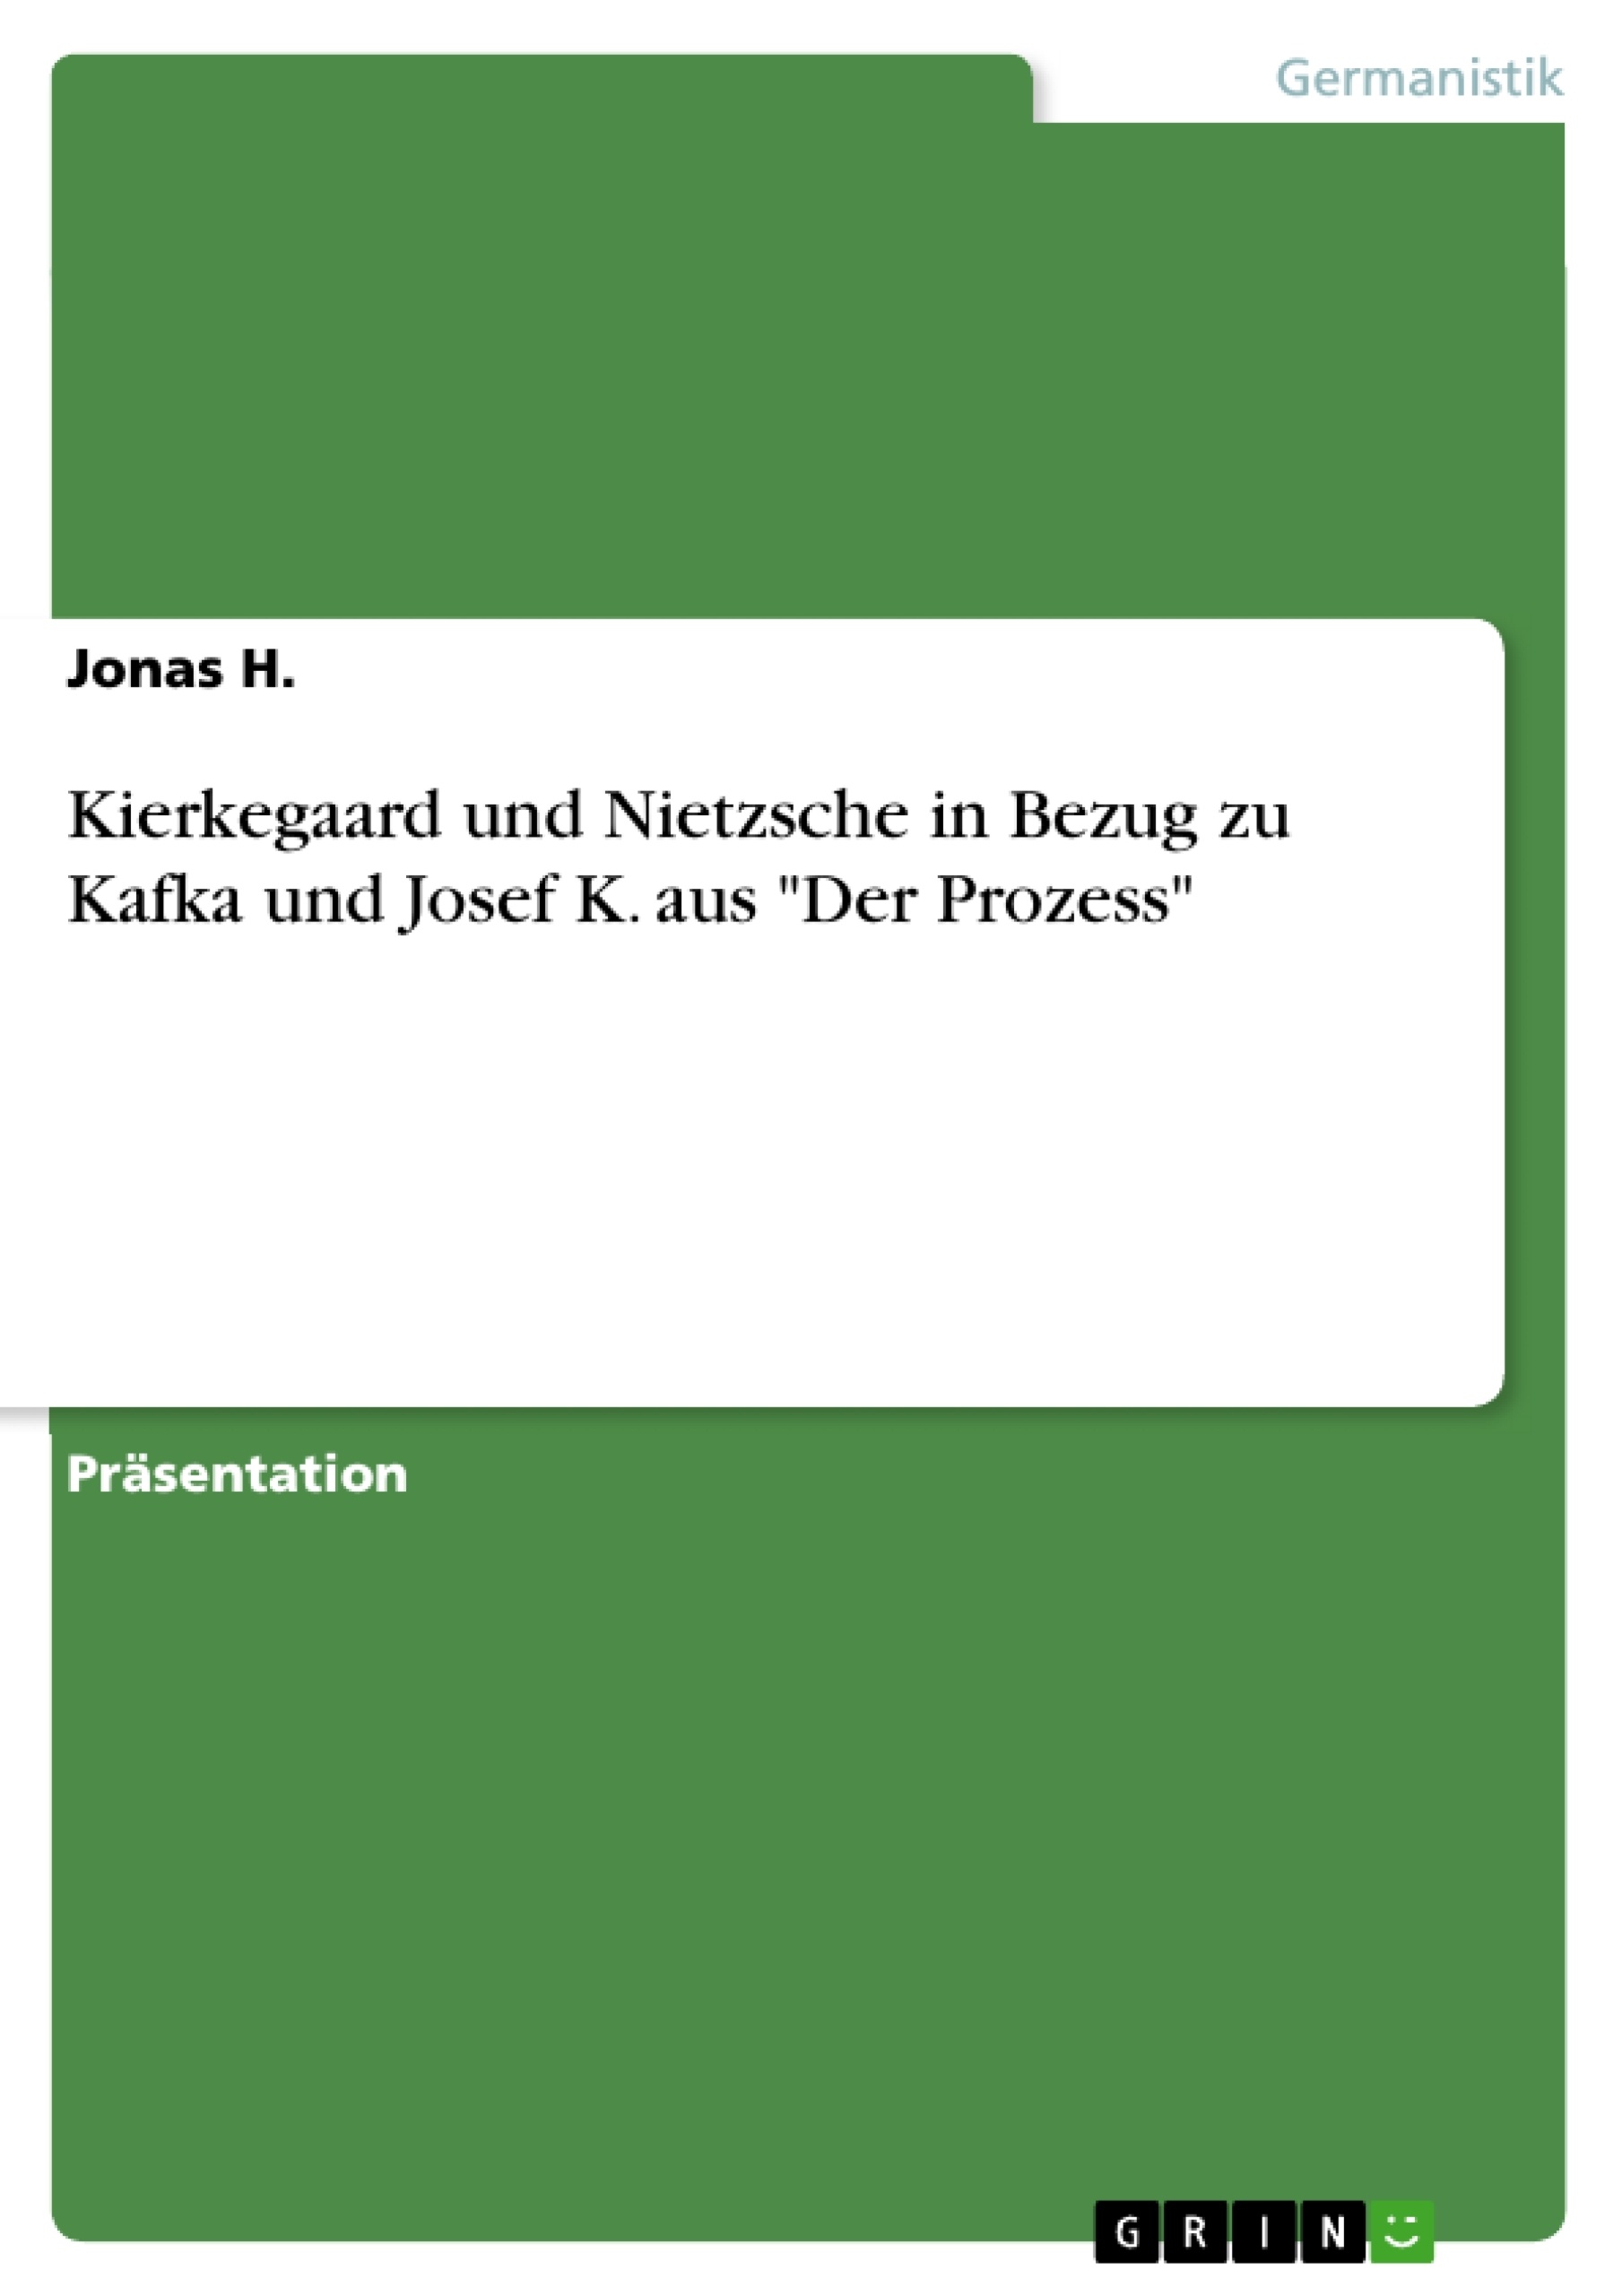 Title: Kierkegaard und Nietzsche in Bezug zu Kafka und Josef K. aus "Der Prozess"